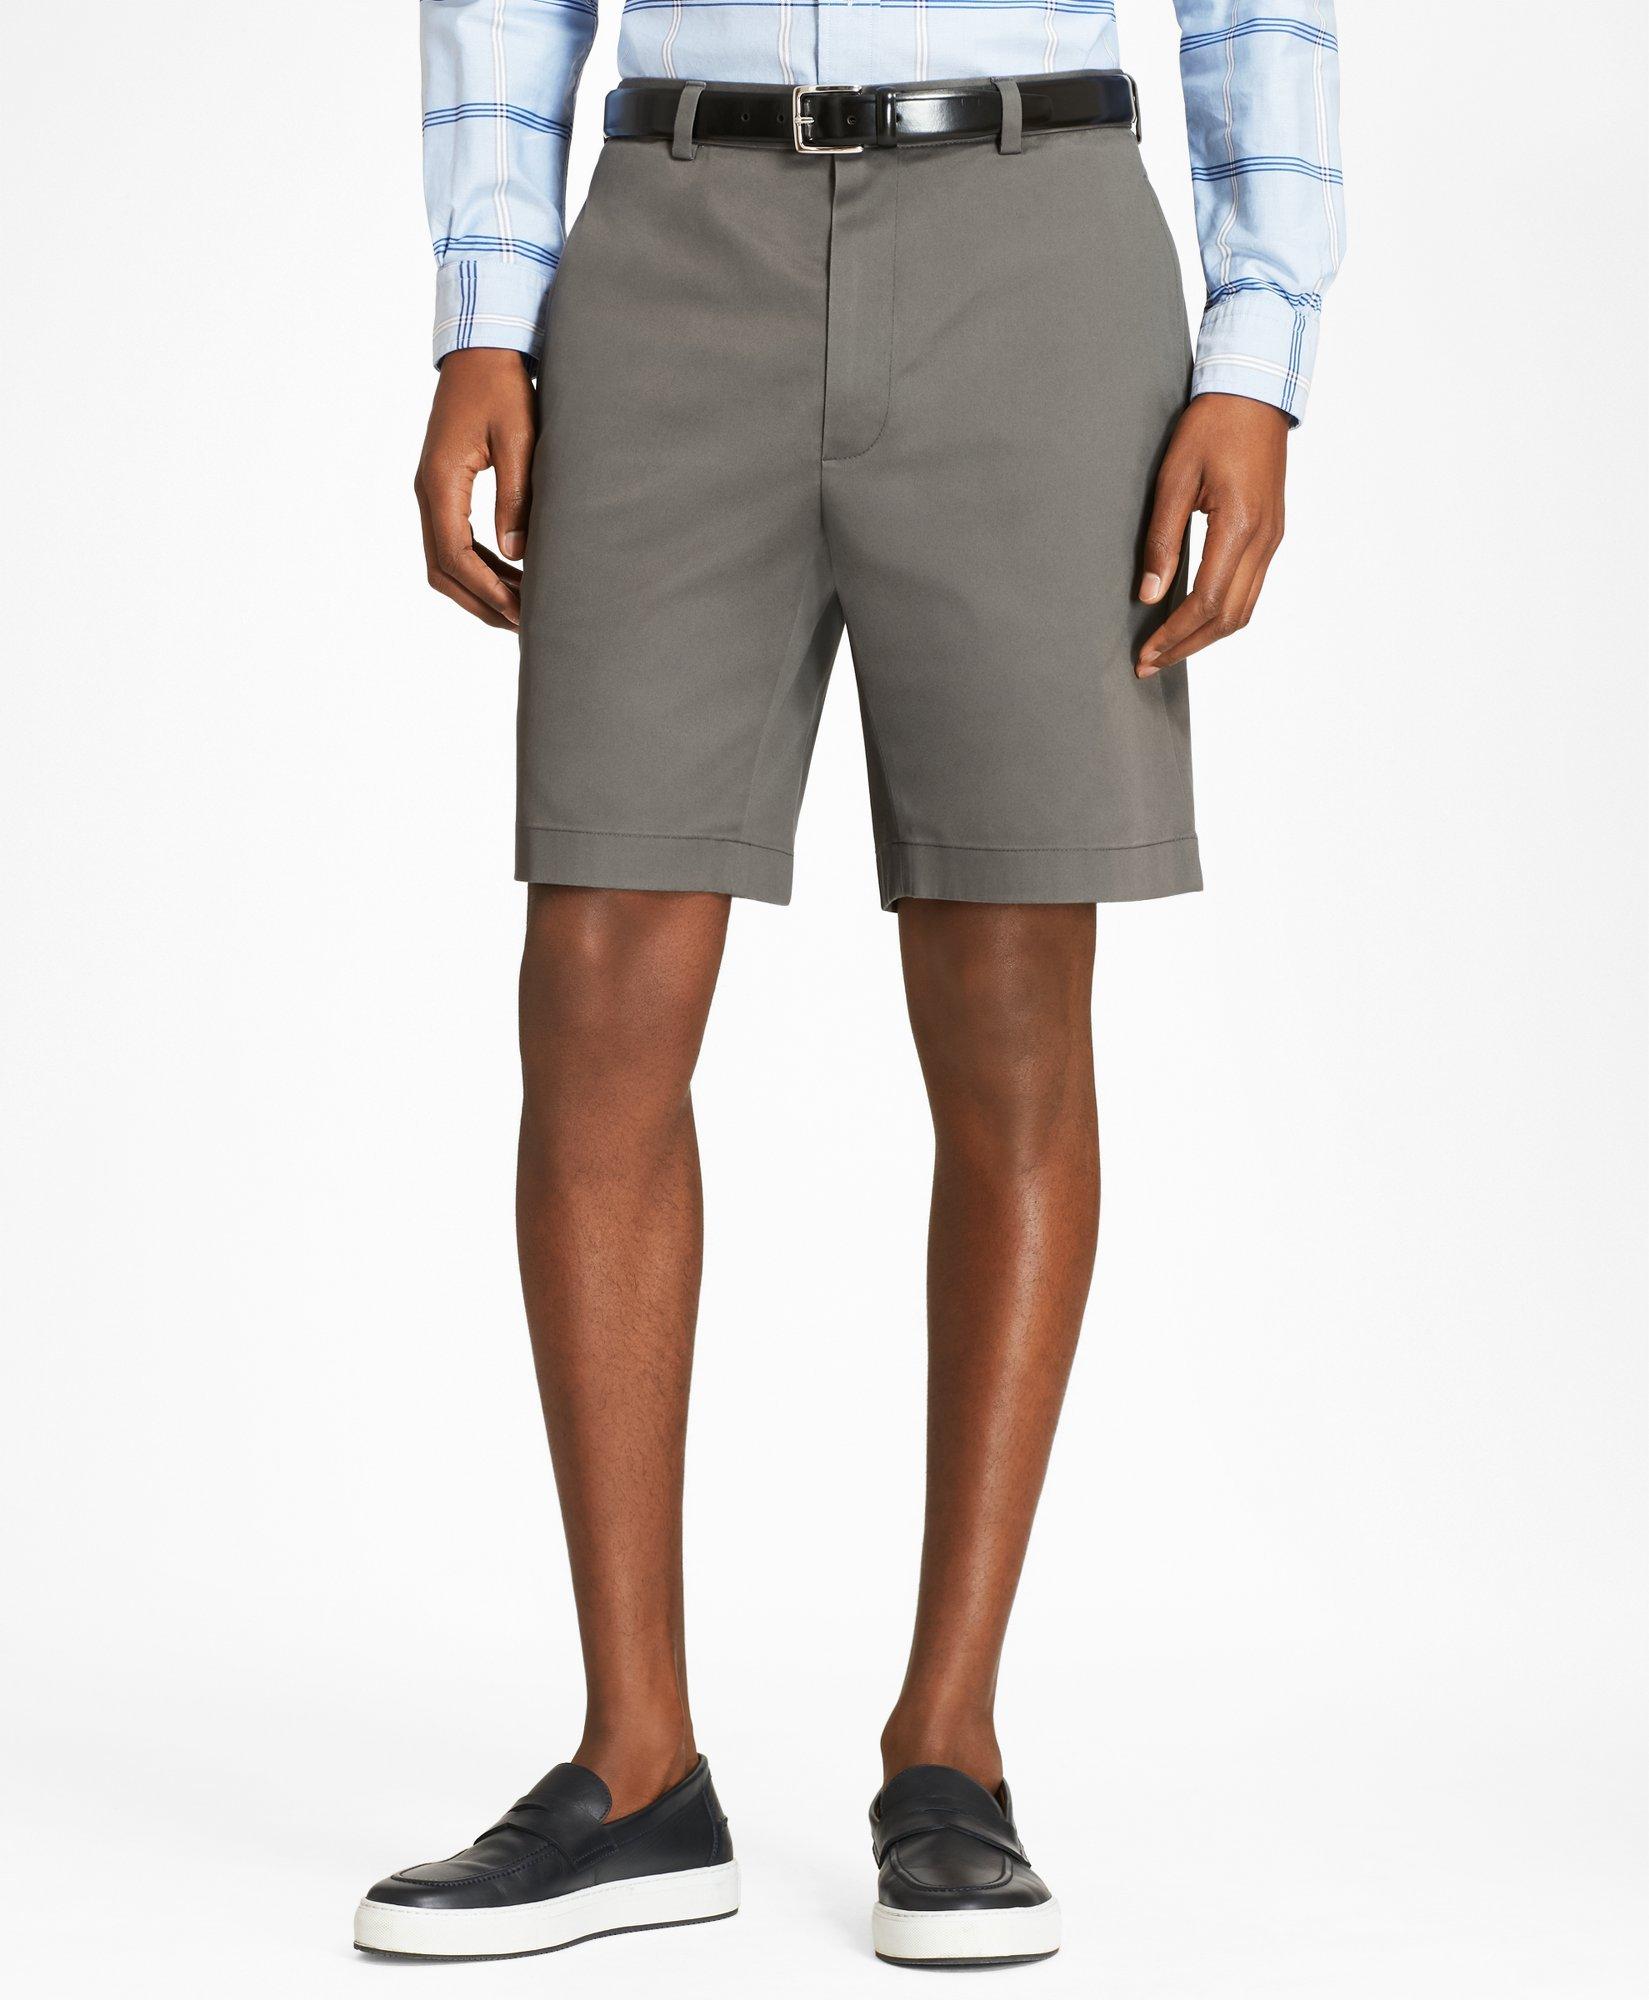 Brooks Brothers Advantage Chino Shorts | Grey | Size 28